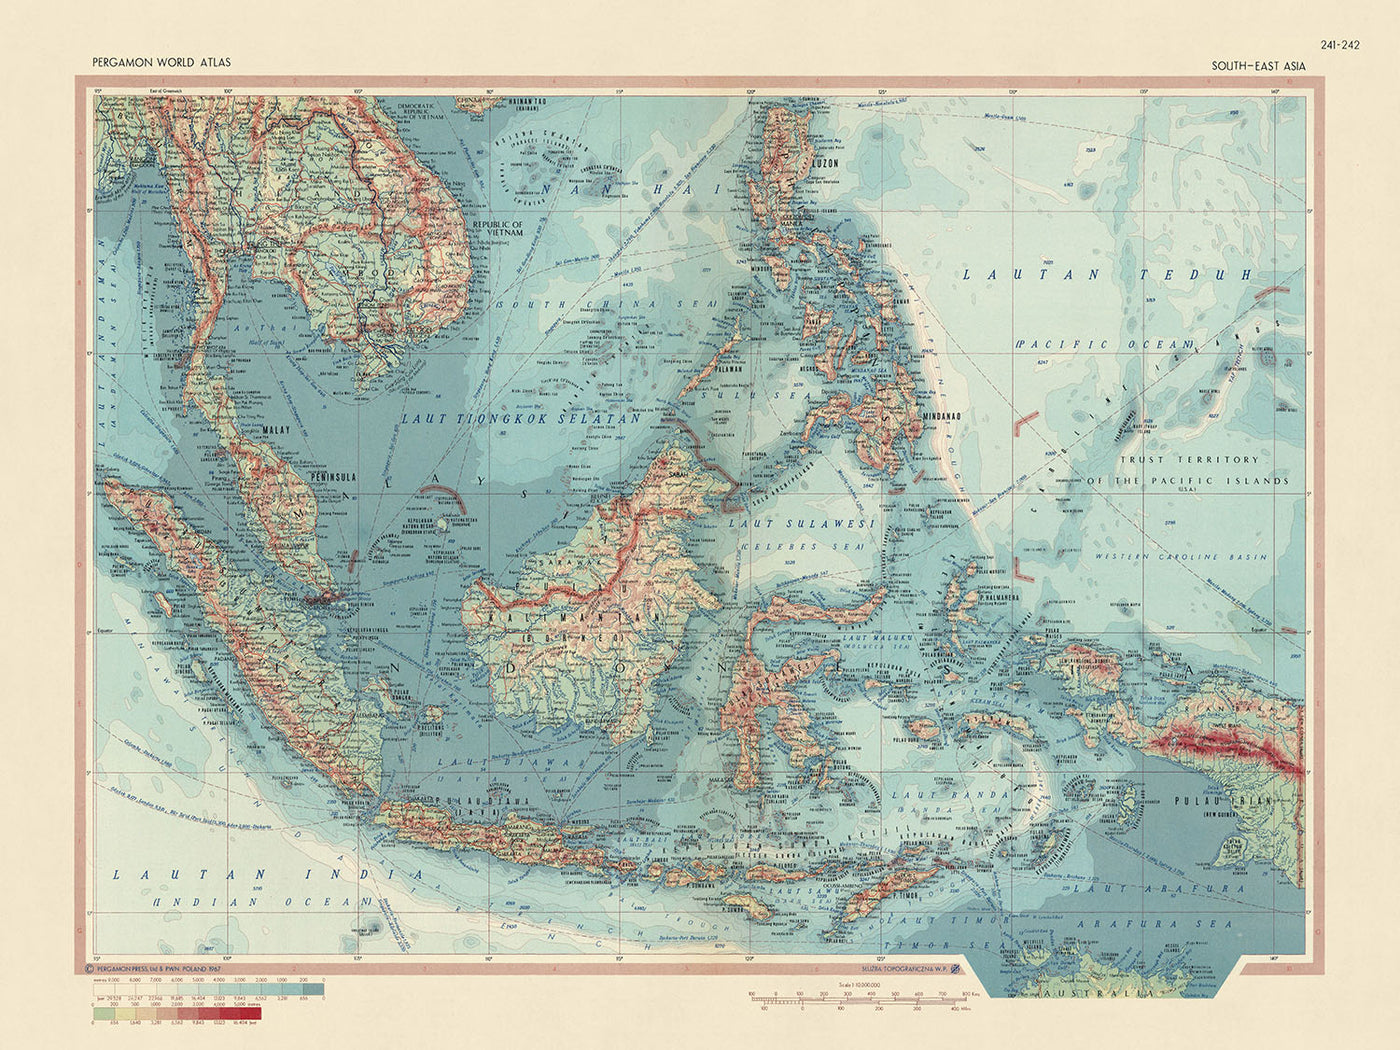 Alte Weltkarte von Südostasien vom polnischen Topographiedienst der Armee, 1967: Detaillierte politische und physische Darstellung, künstlerischer kartografischer Stil und breite geografische Abdeckung